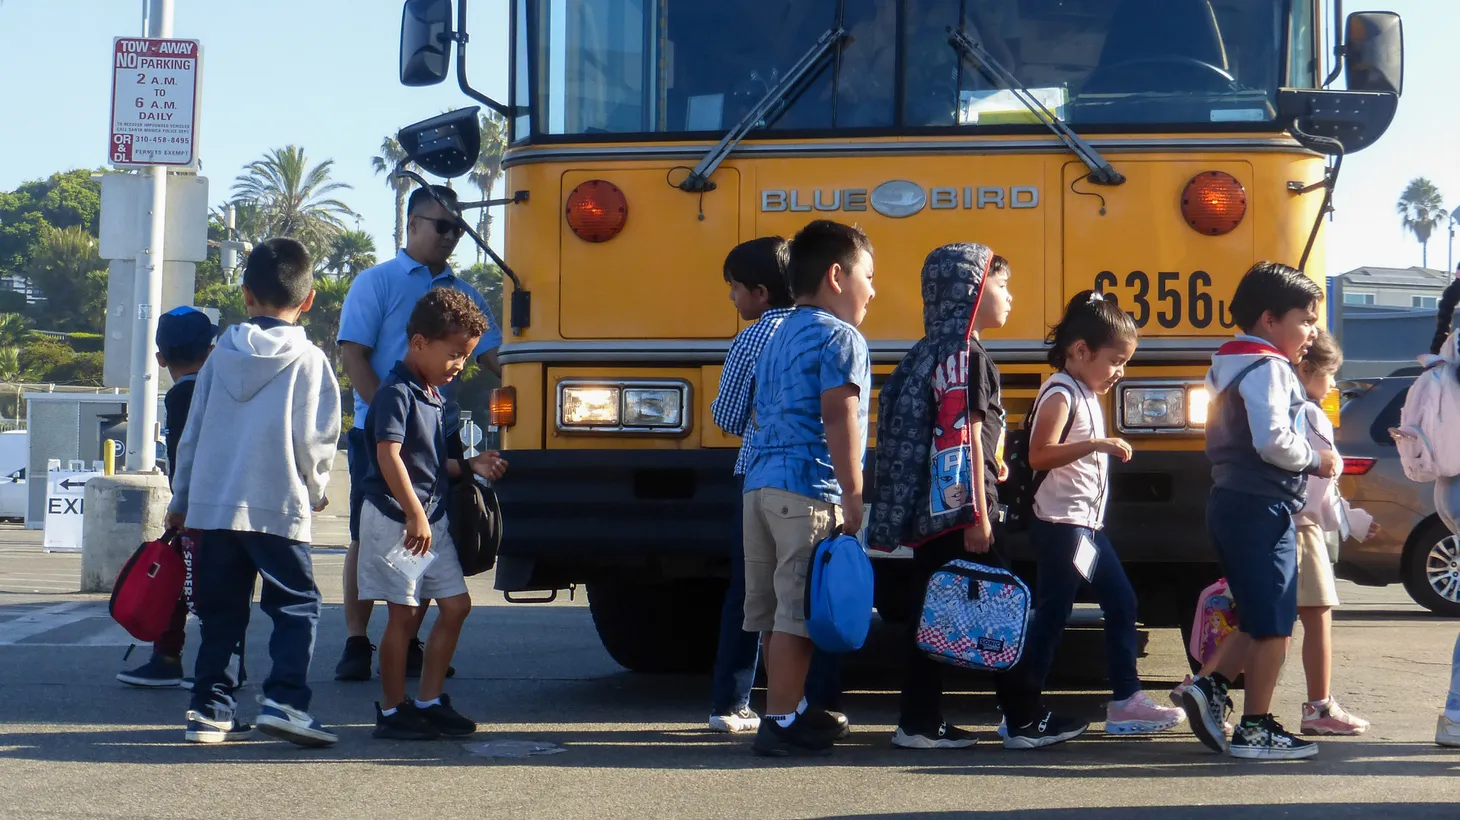 Students deboard a Los Angeles Unified School District bus at Santa Monica Pier, CA.